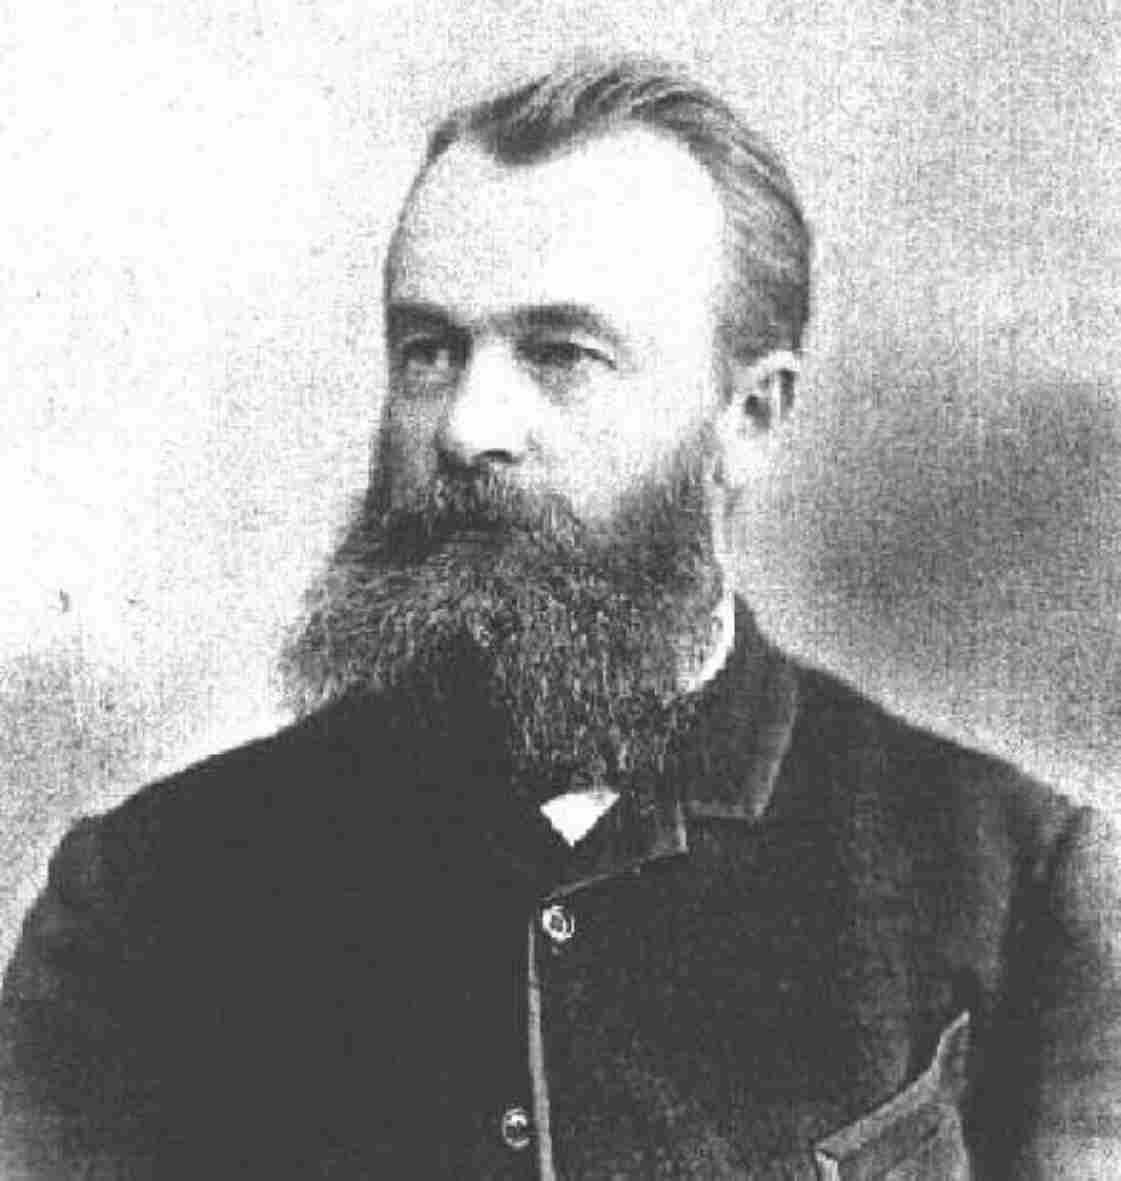 Alexander von Schlippe